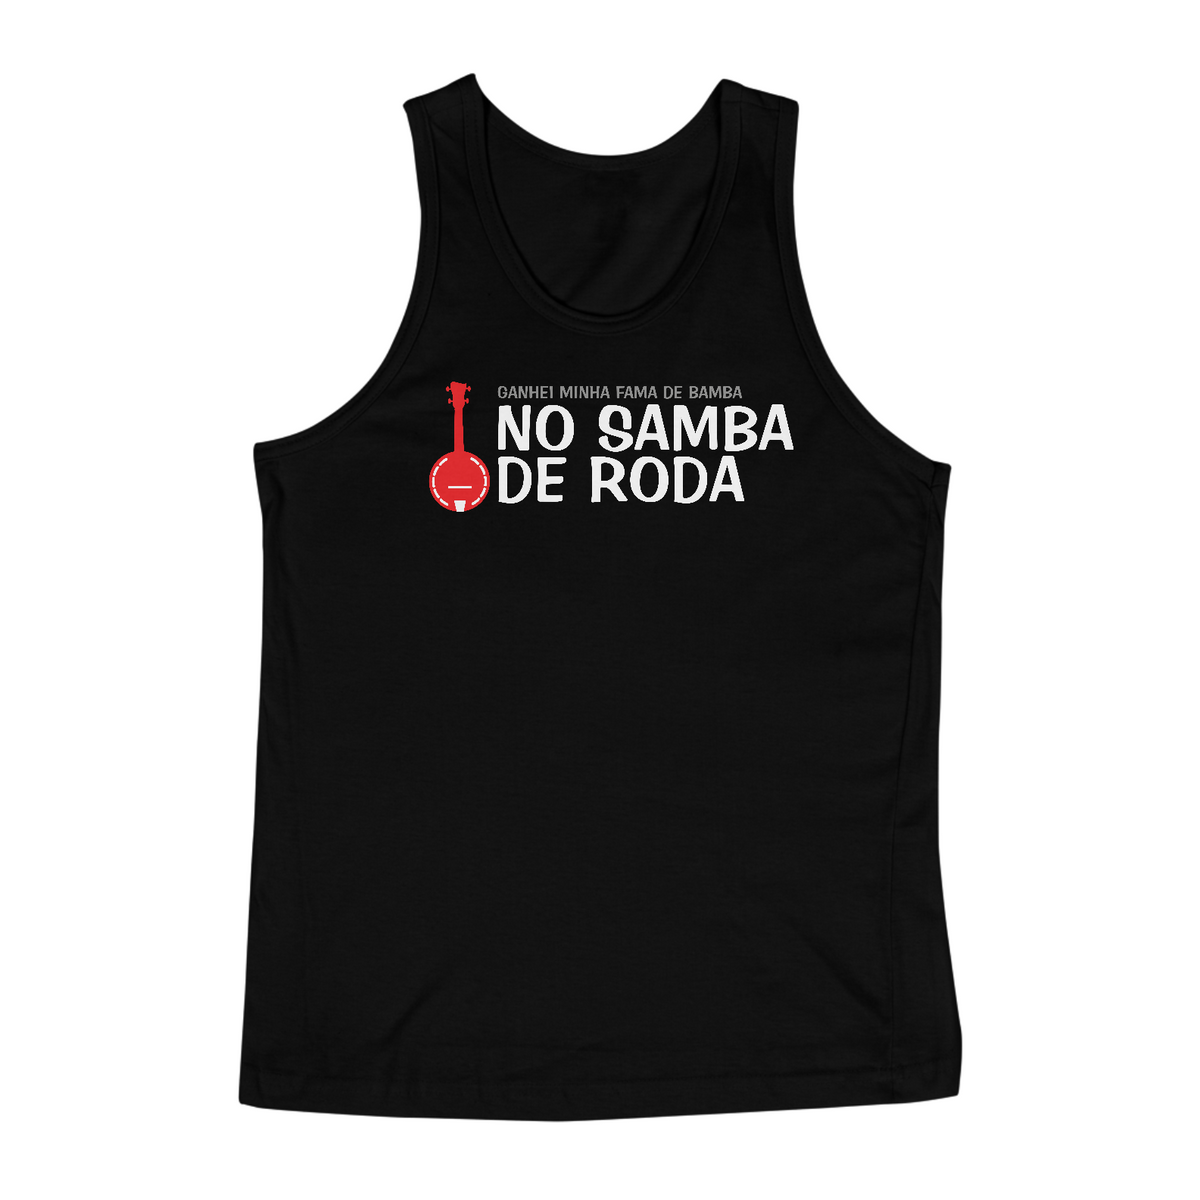 Nome do produto: Camiseta Regata Ganhei Minha Fama de Bamba - Preta